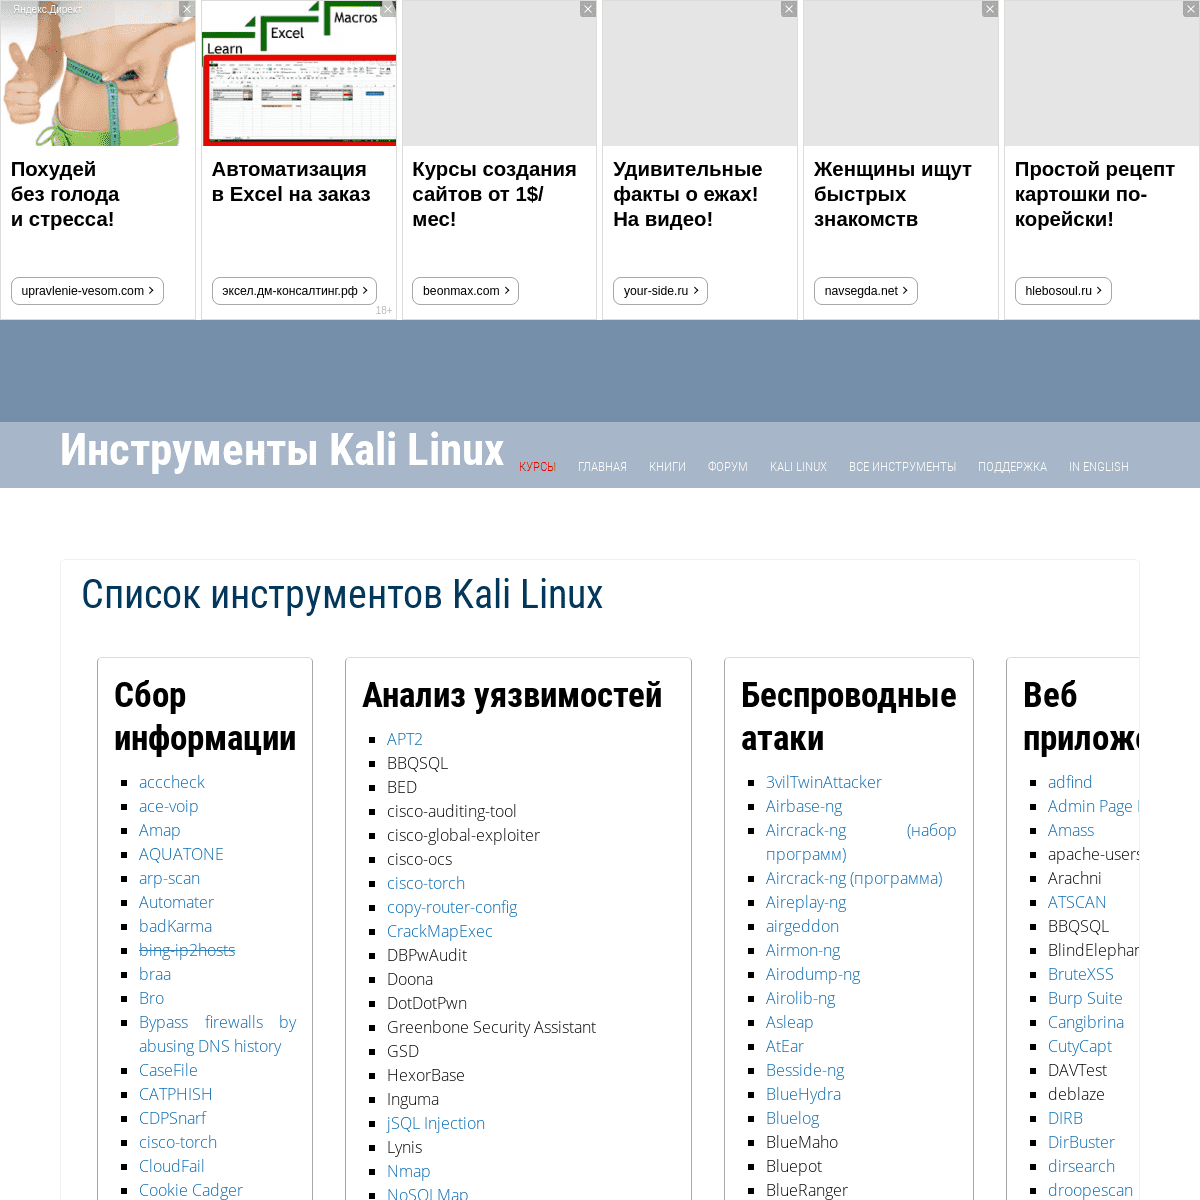 Инструменты Kali Linux - Список инструментов для тестирования на проникновение и их описание